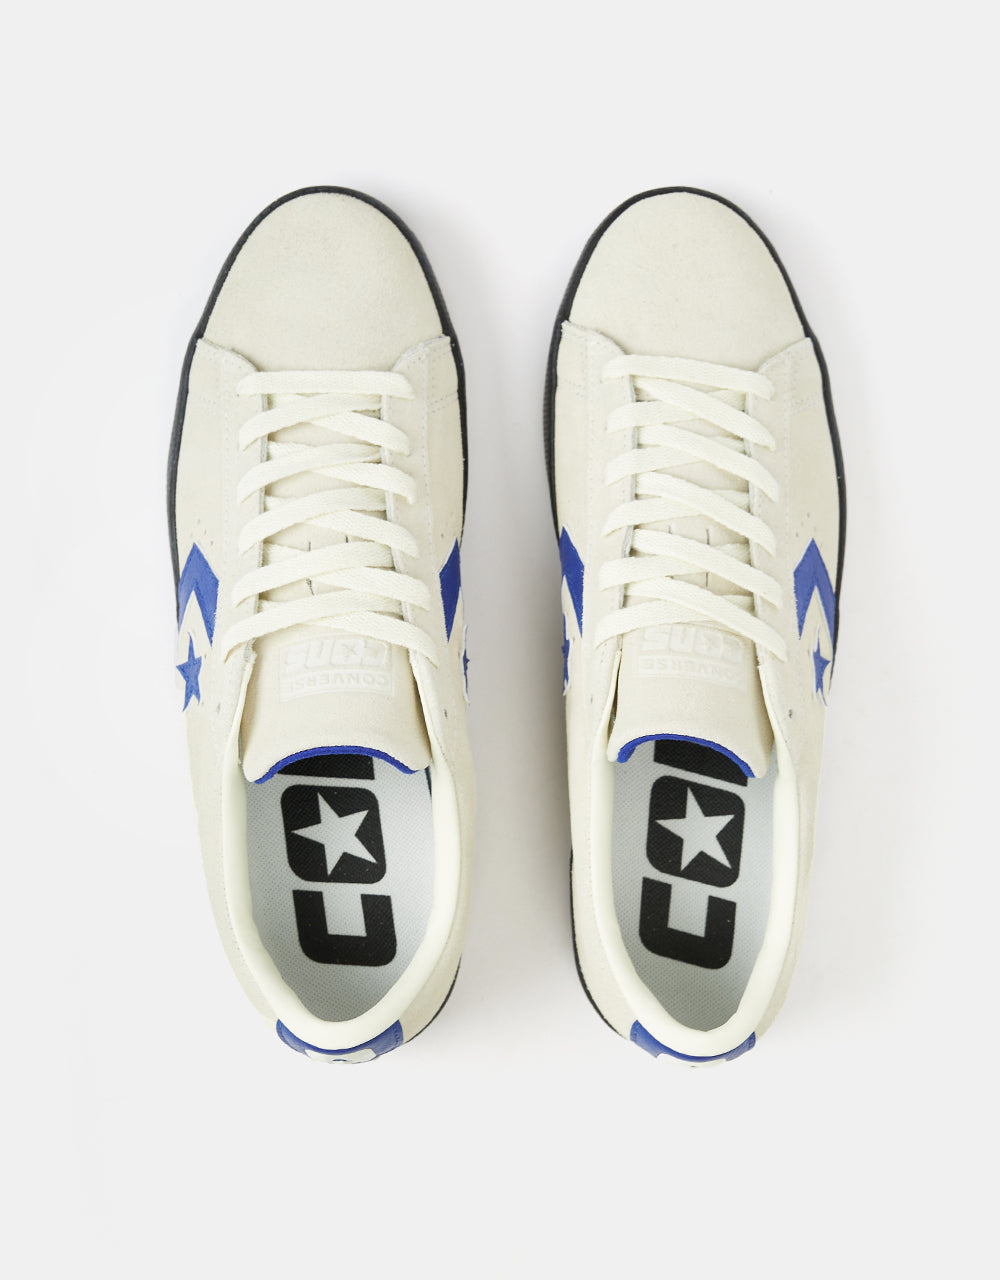 Converse PL Vulc Pro Skate Shoes - Egret/Blue/Black